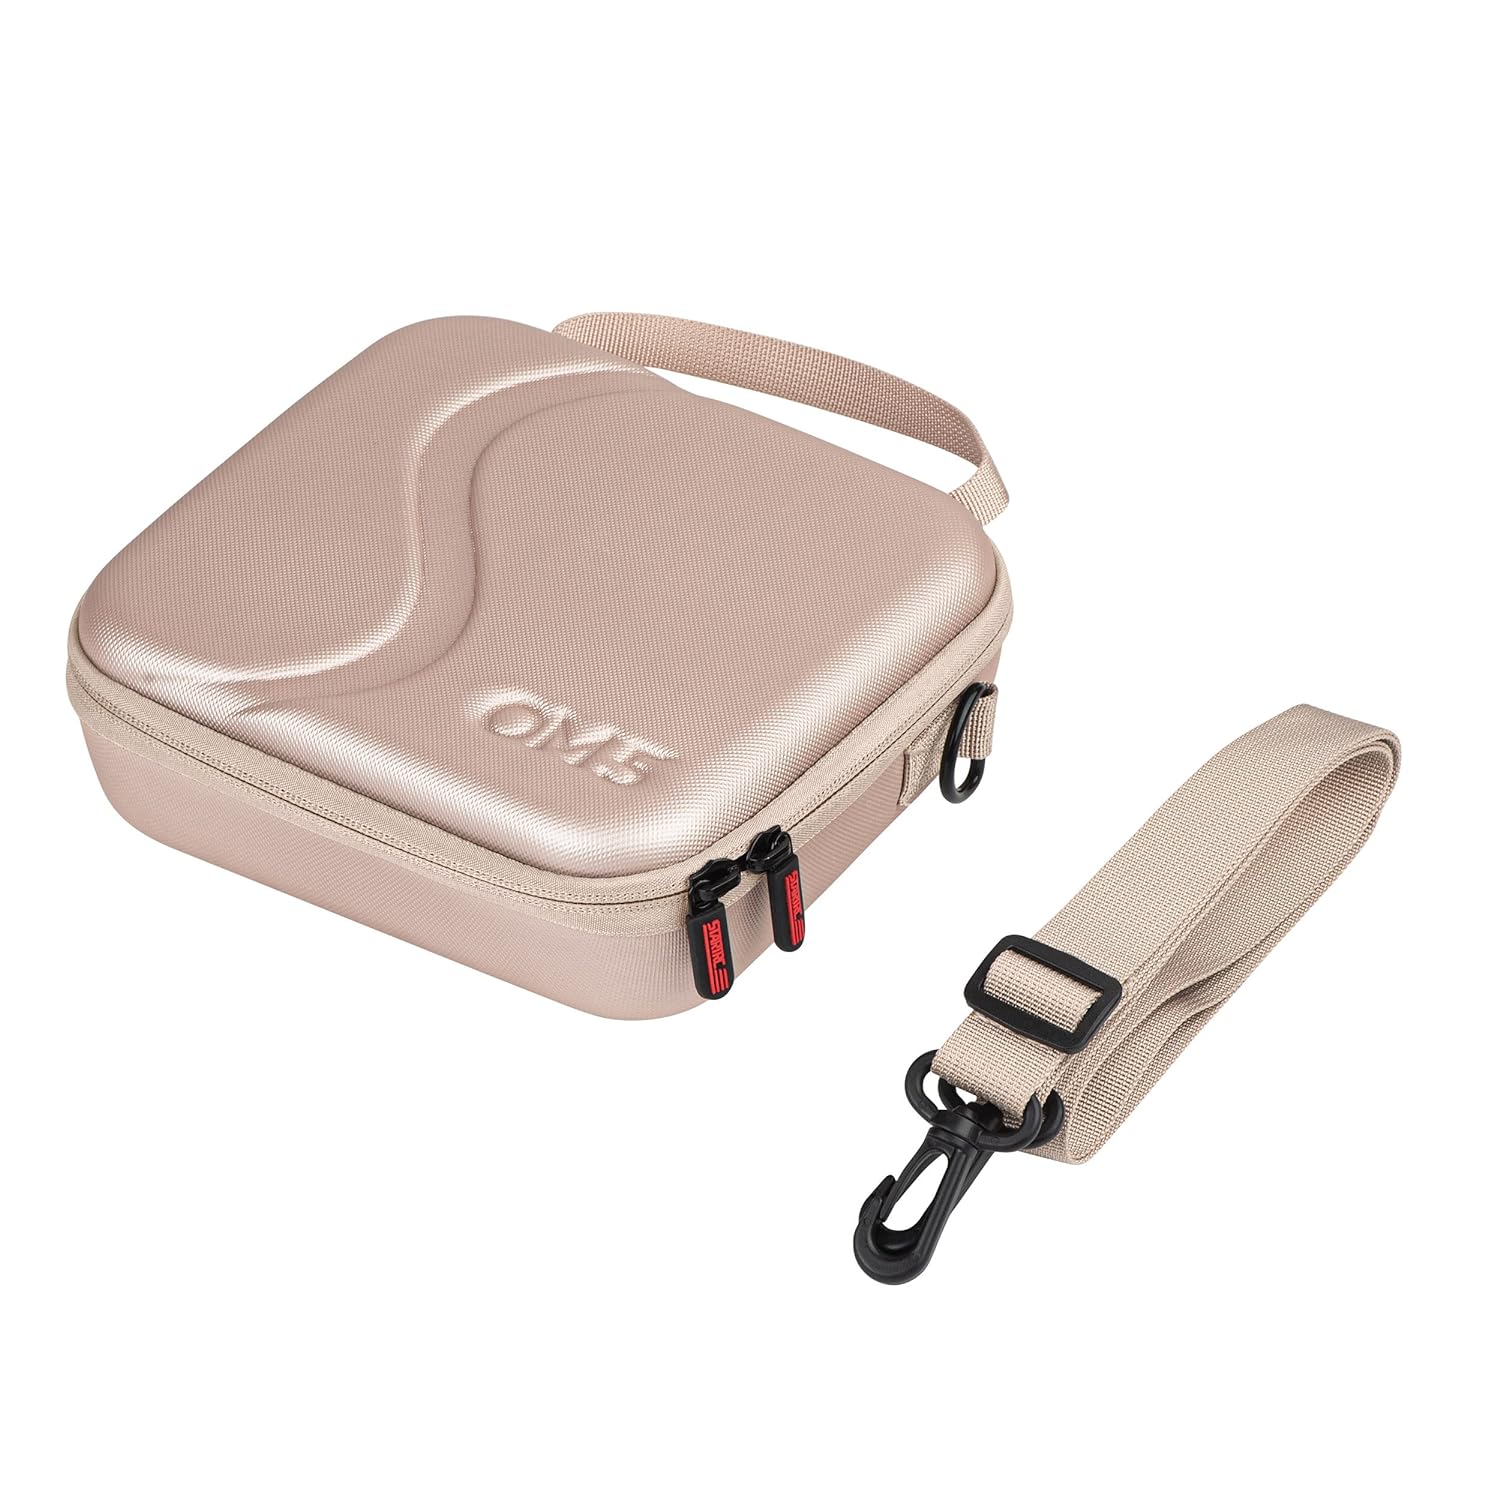 Zell Electronics Zell Om 5 Case,Waterproof Portable Storge Shoulder Bag Travel Case For Dji Om 5 Gimbal Stabilizer Accessories(Gold)